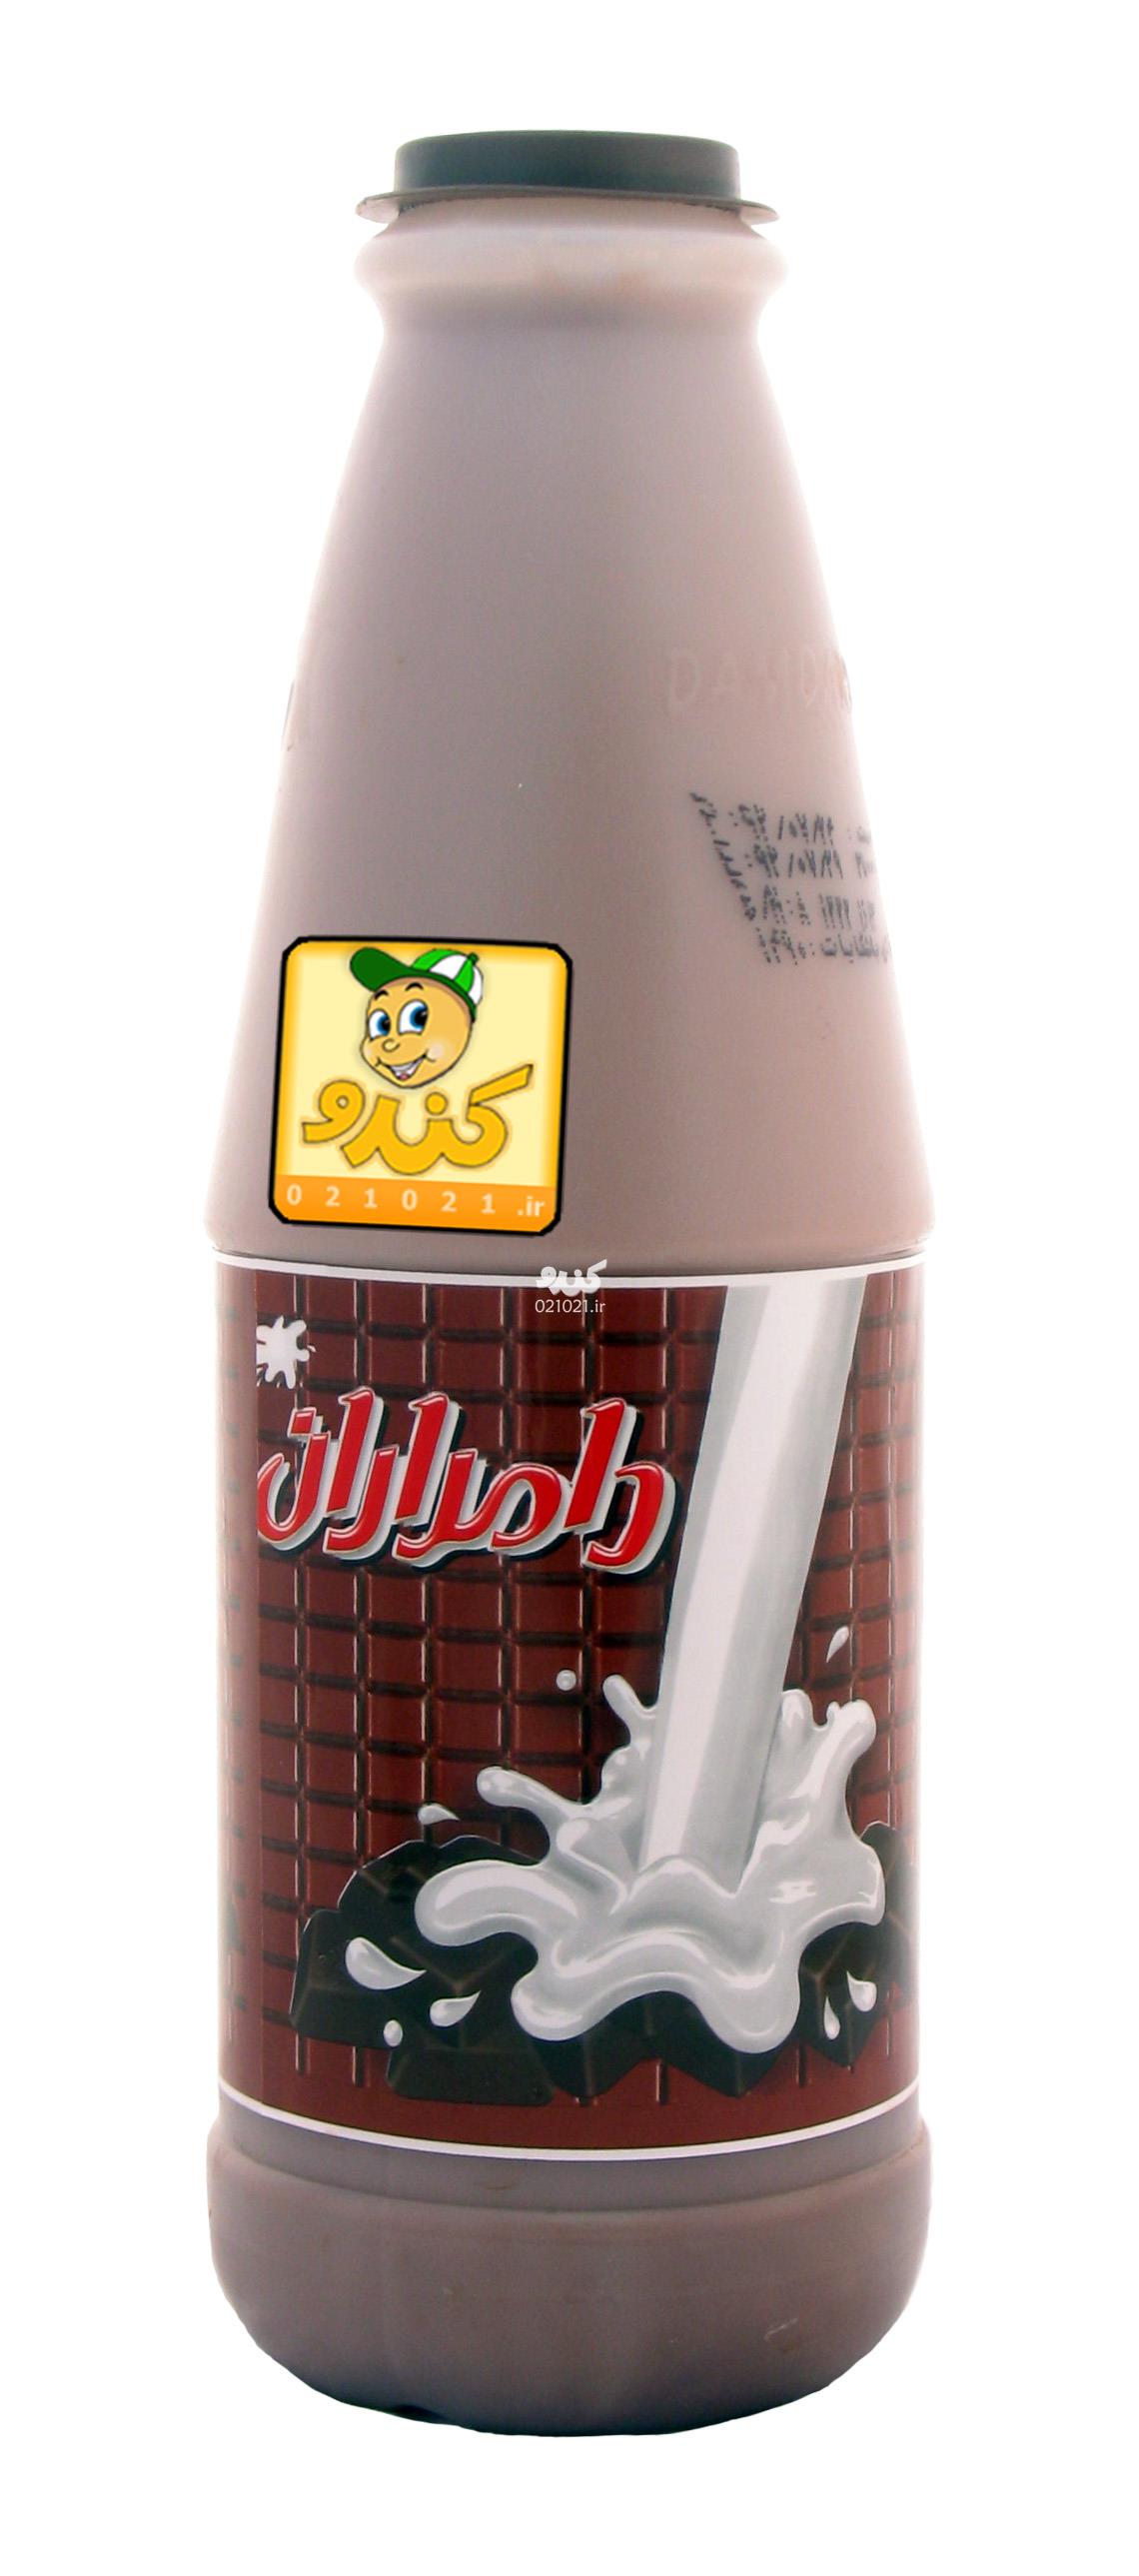 قیمت شیر کاکائو پاکتی